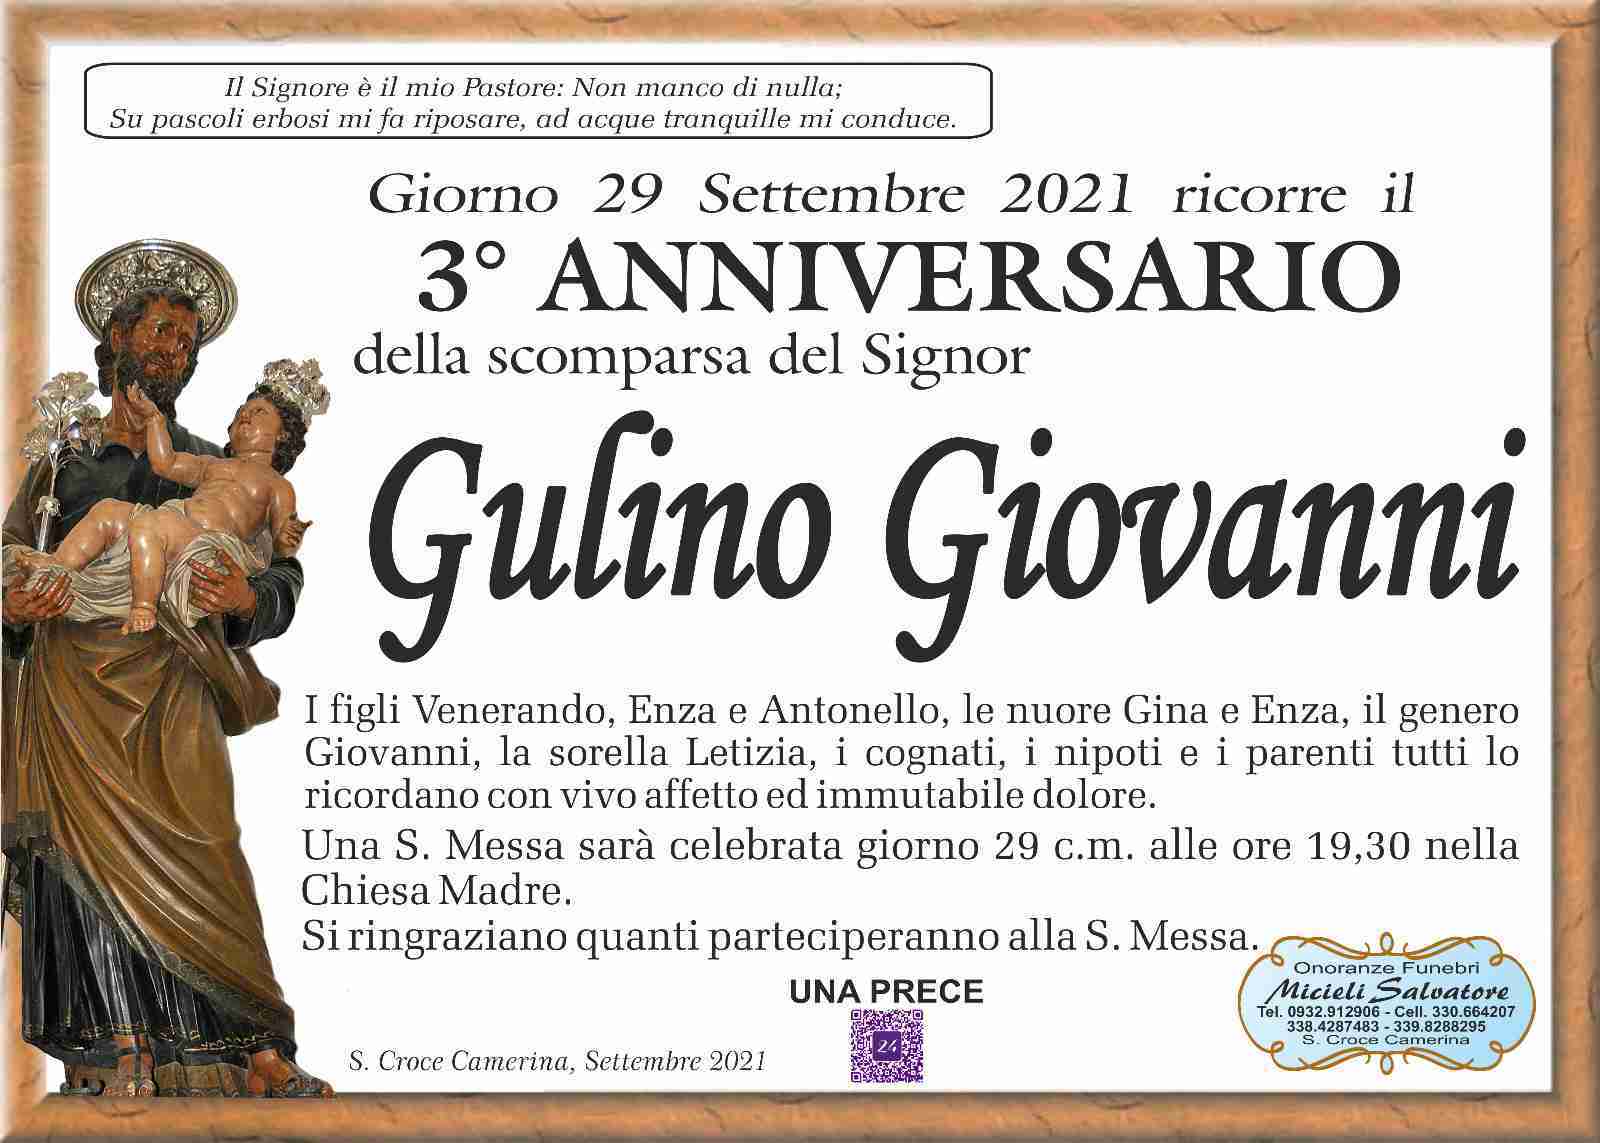 Giovanni Gulino